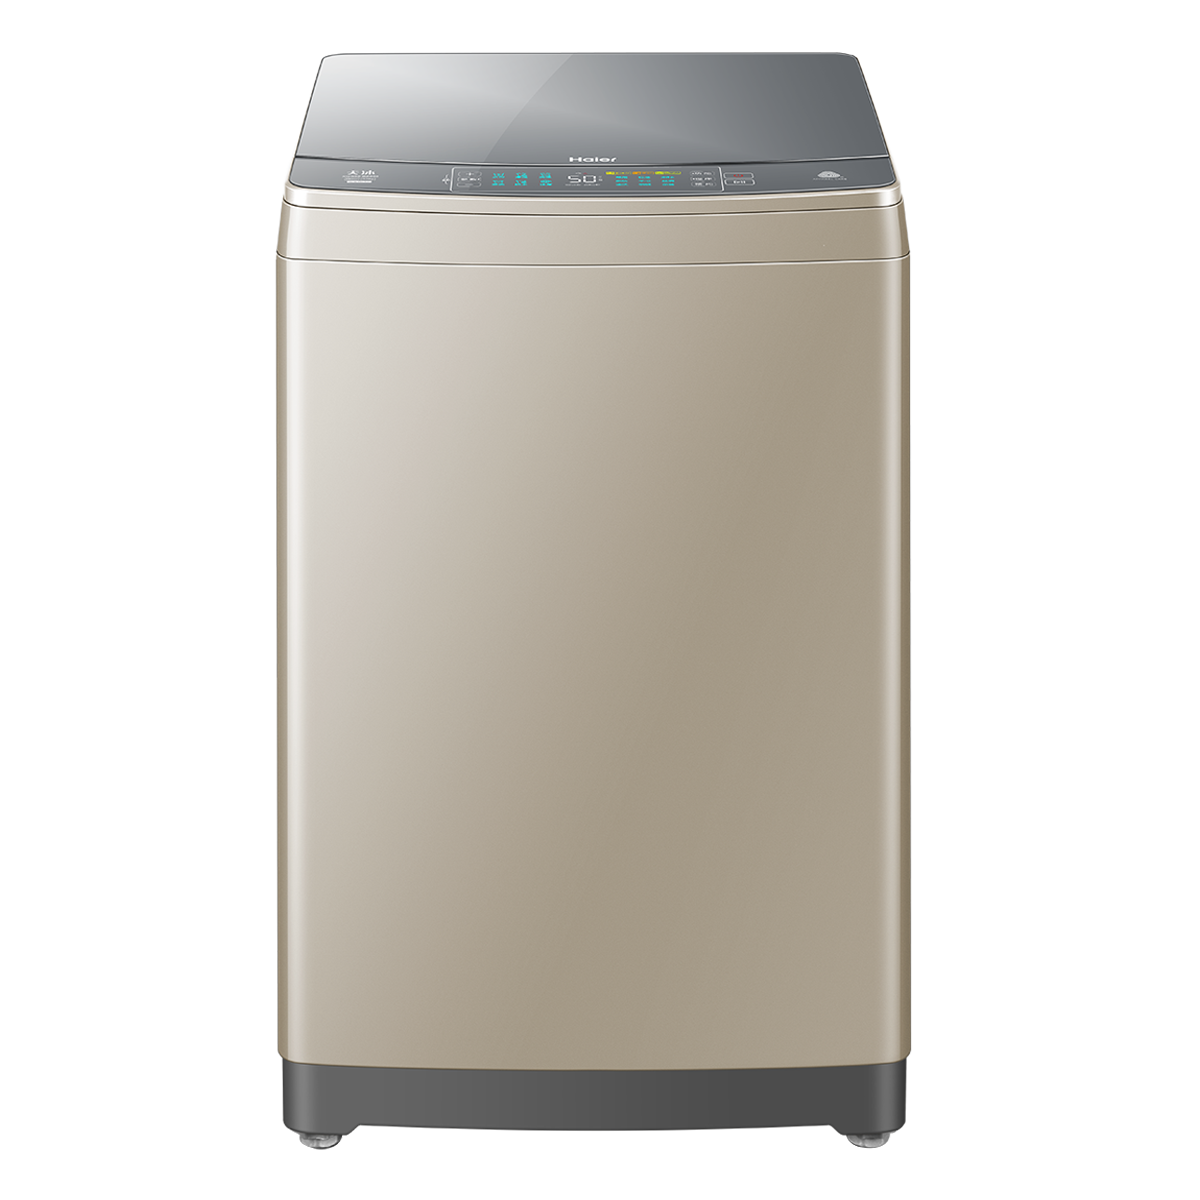 海尔Haier洗衣机 XQS85-BZ868 说明书